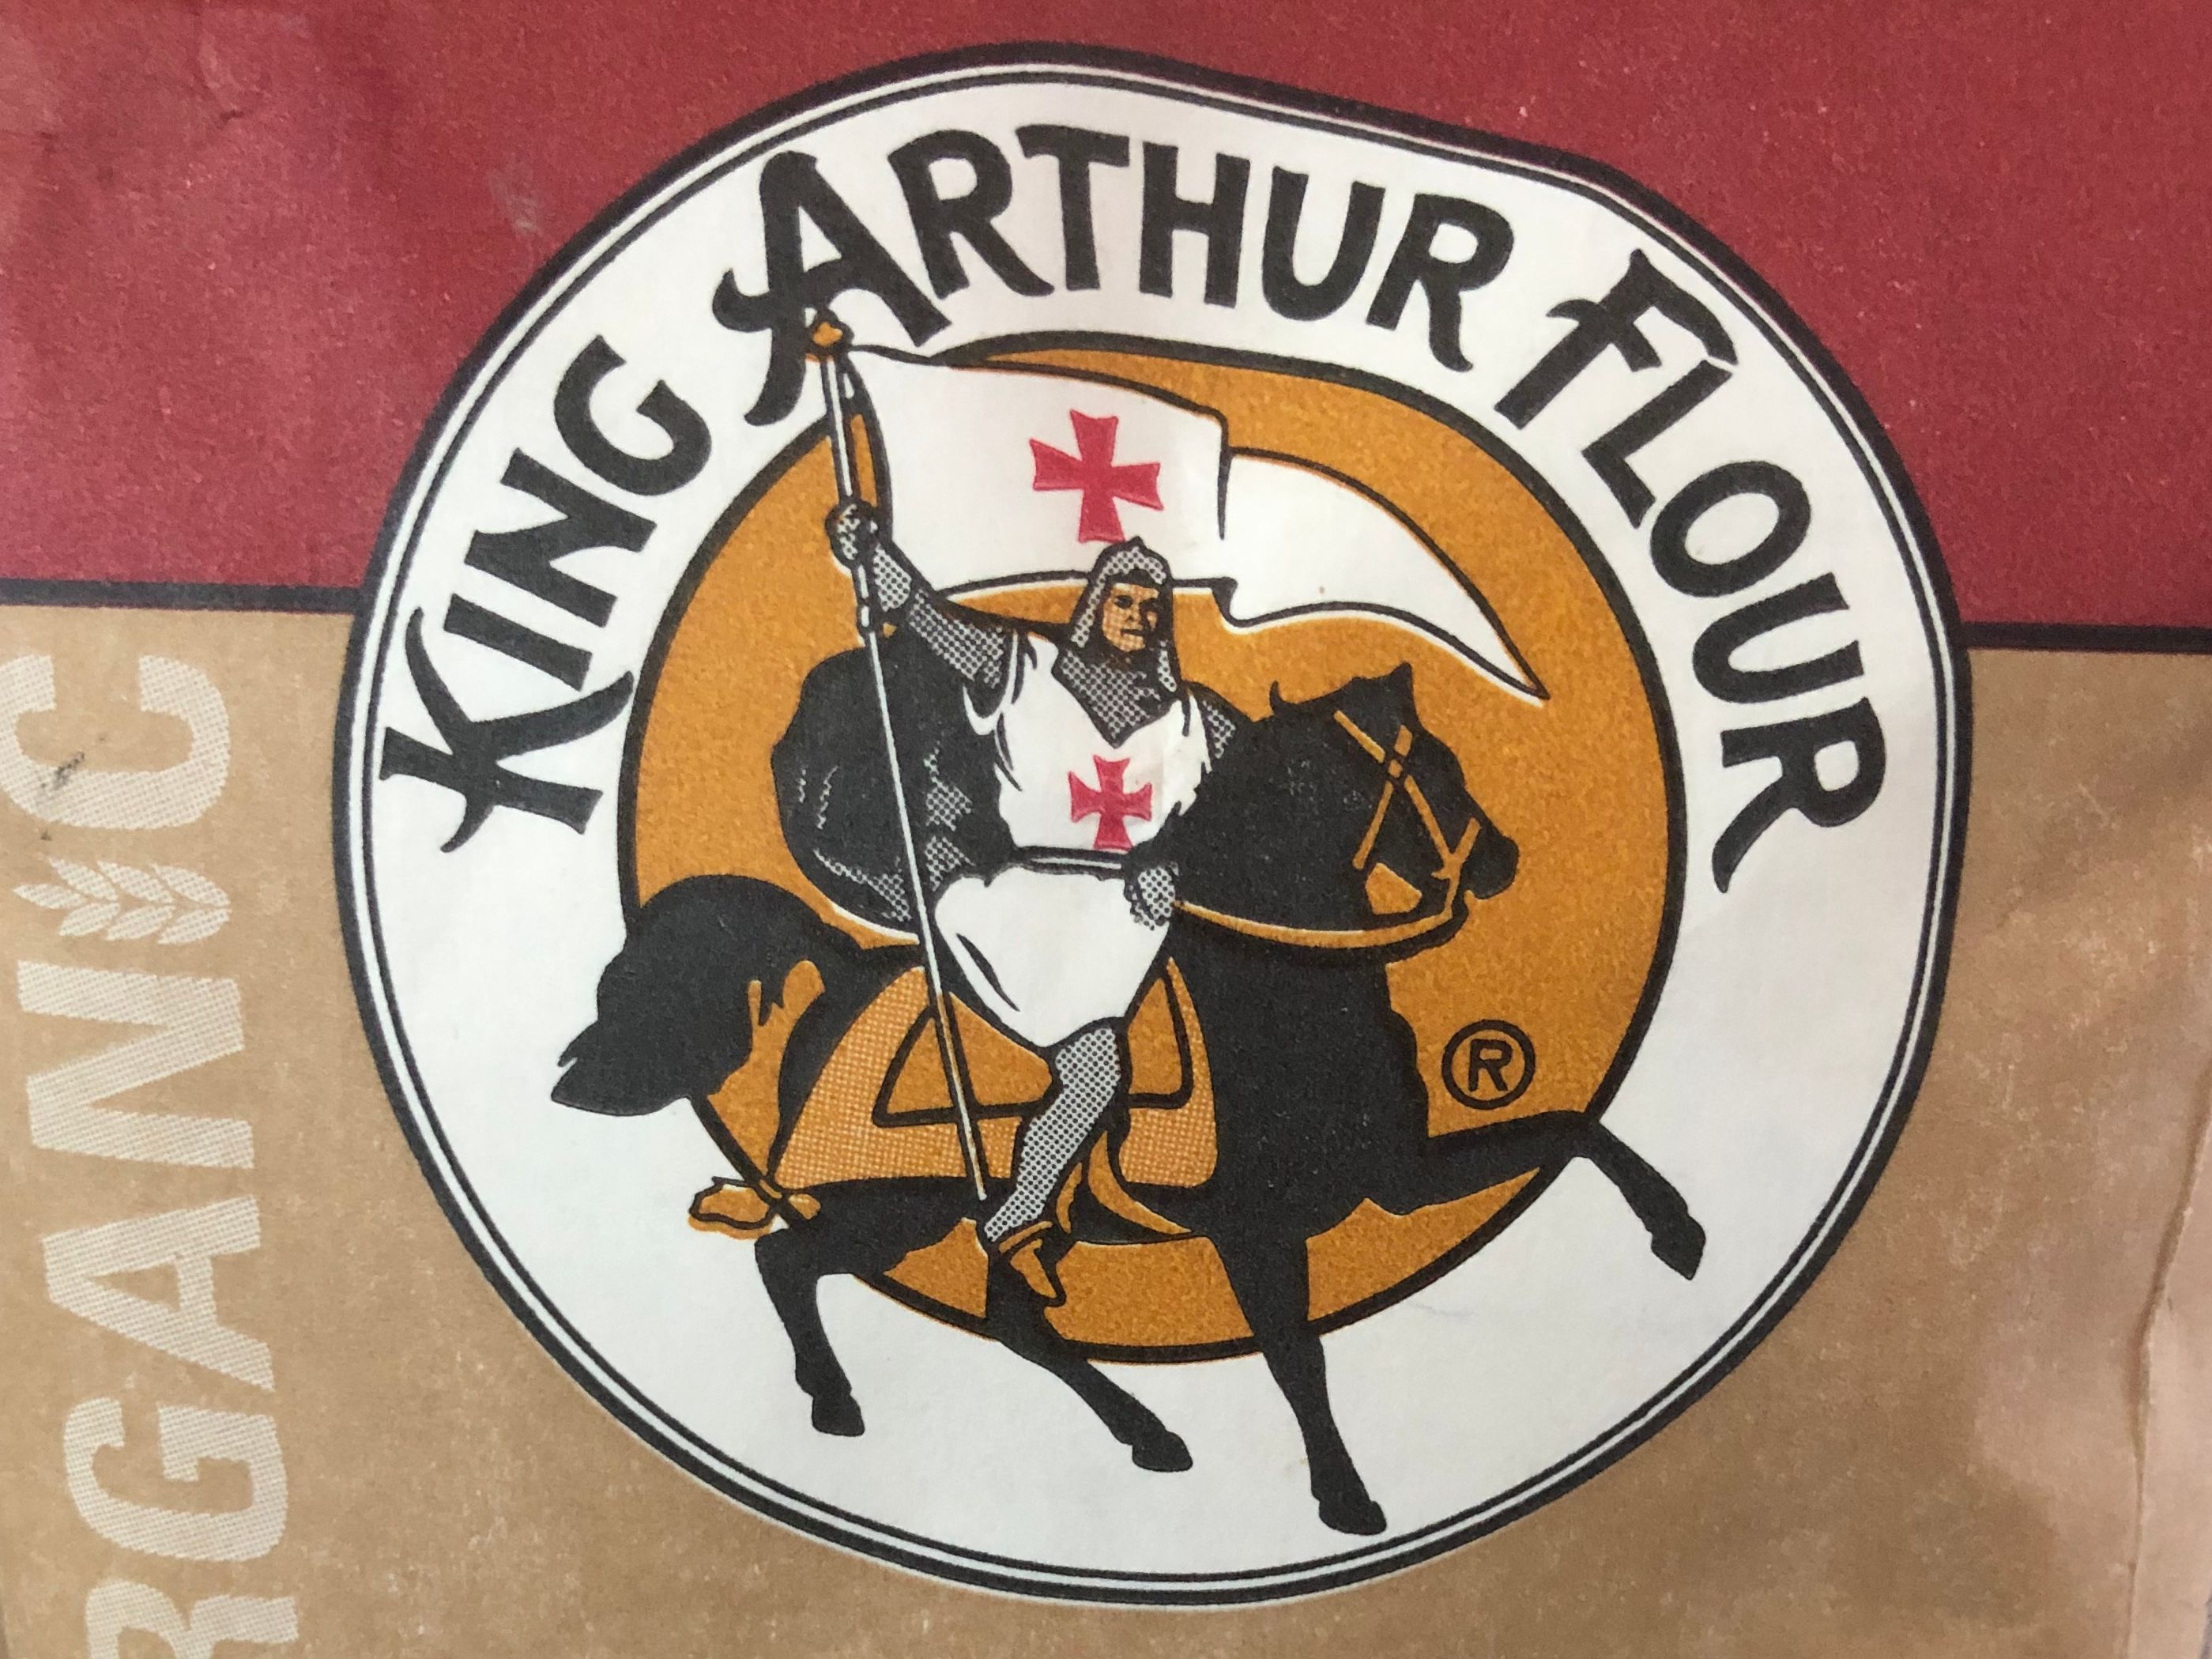 File:King Arthur Baking Company store Norwich.jpg - Wikipedia